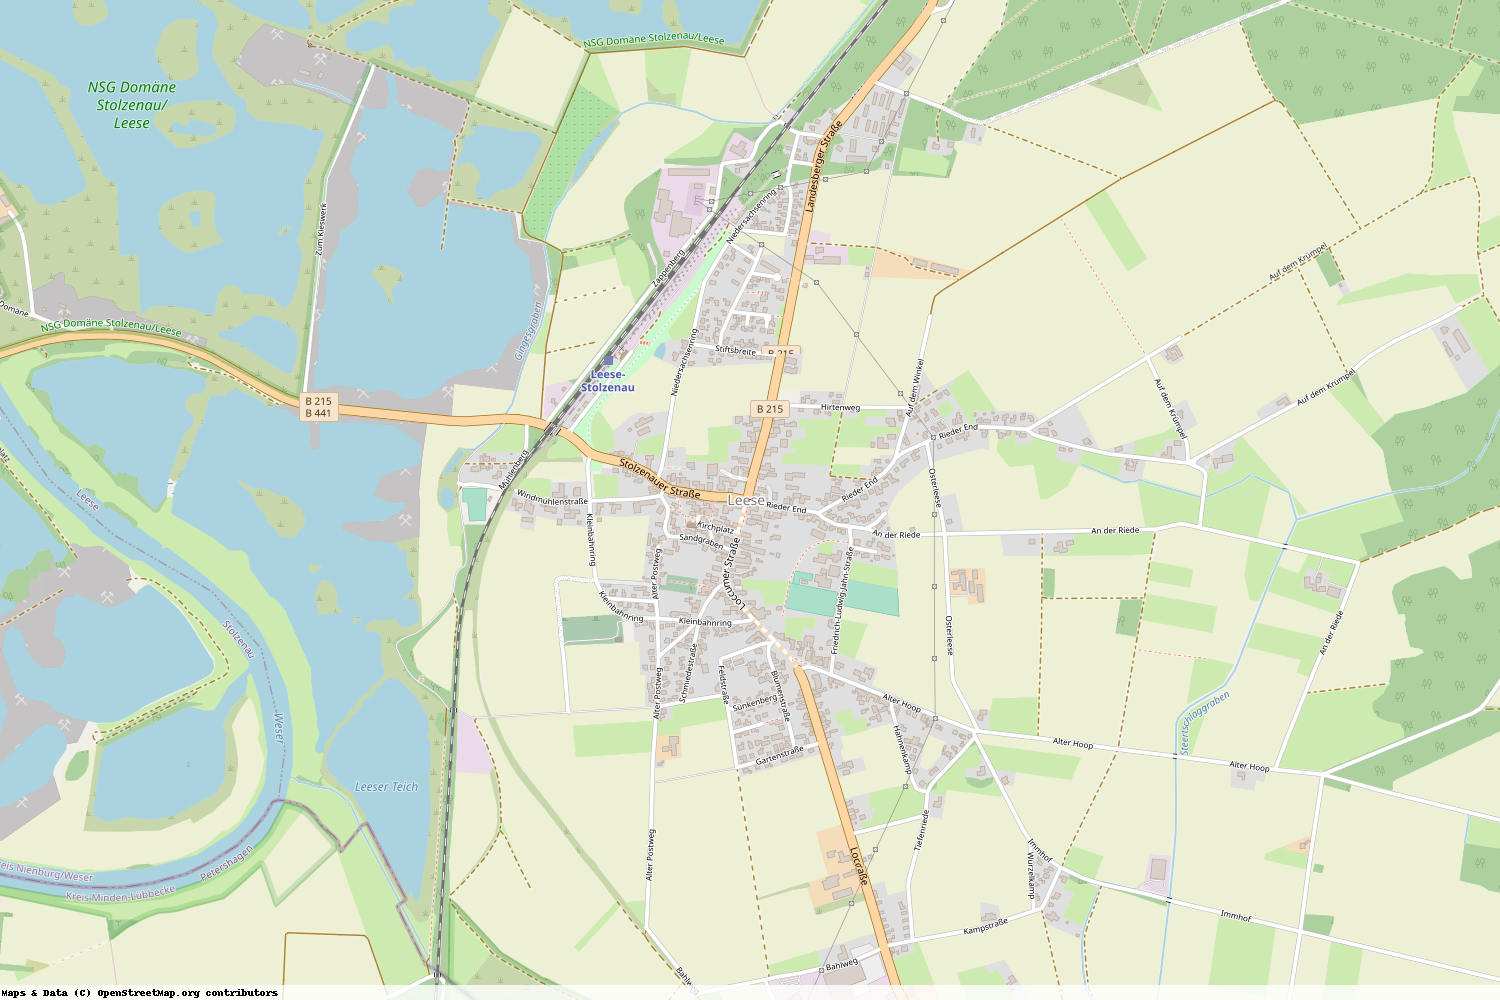 Ist gerade Stromausfall in Niedersachsen - Nienburg (Weser) - Leese?